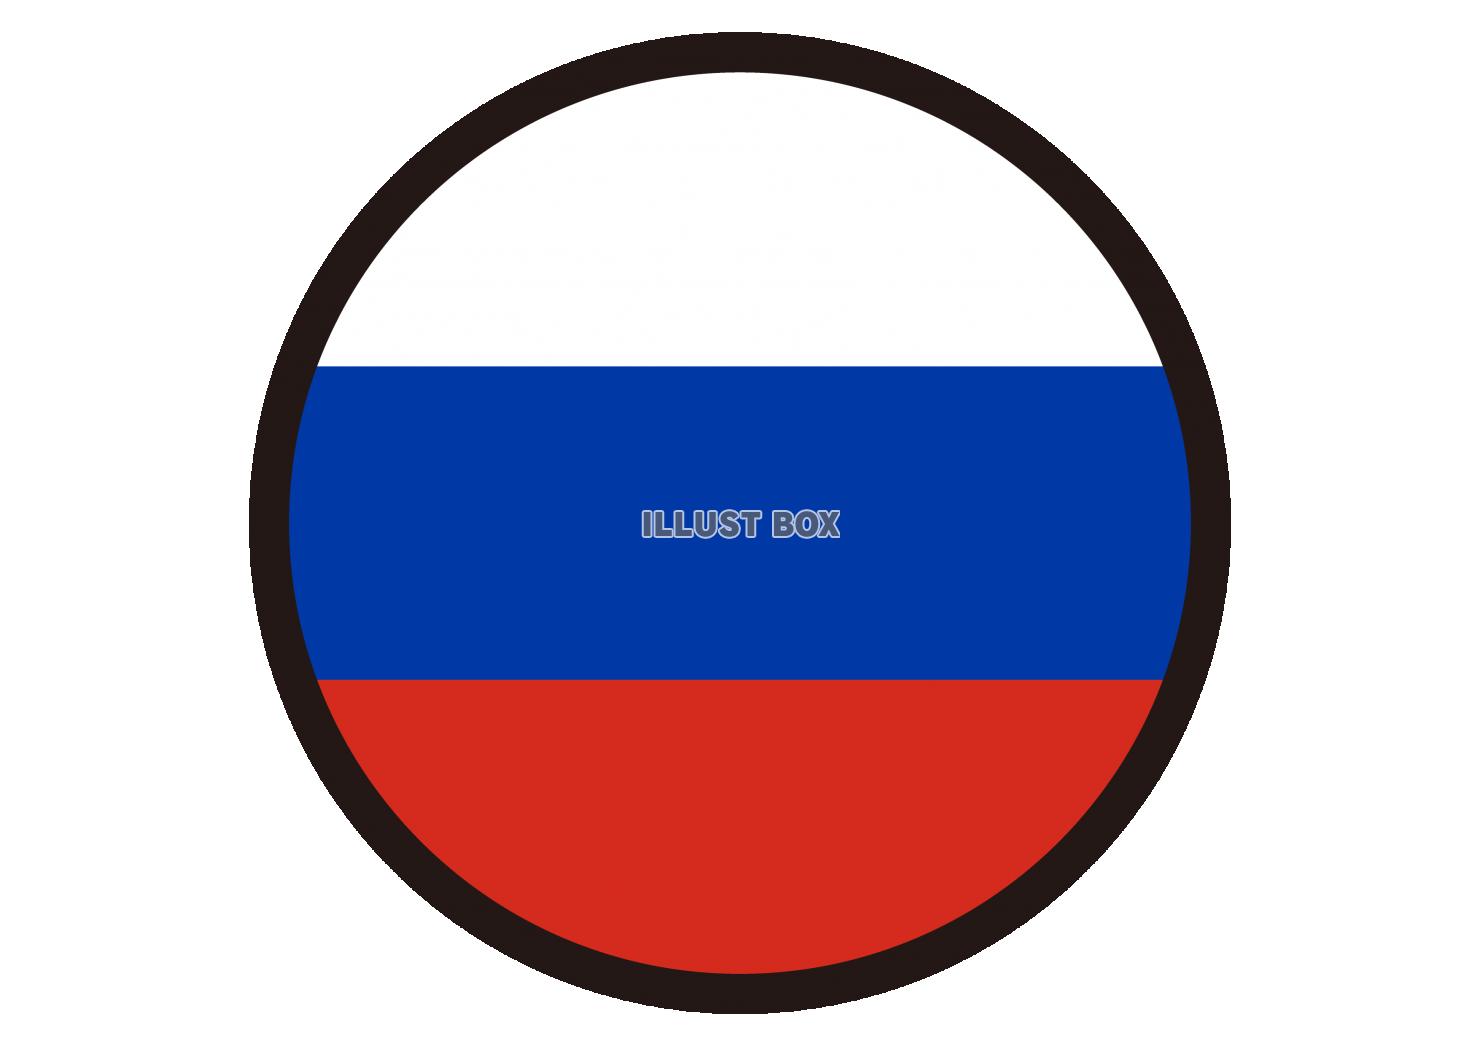 3_イラスト_ ロシア国旗・丸・黒枠